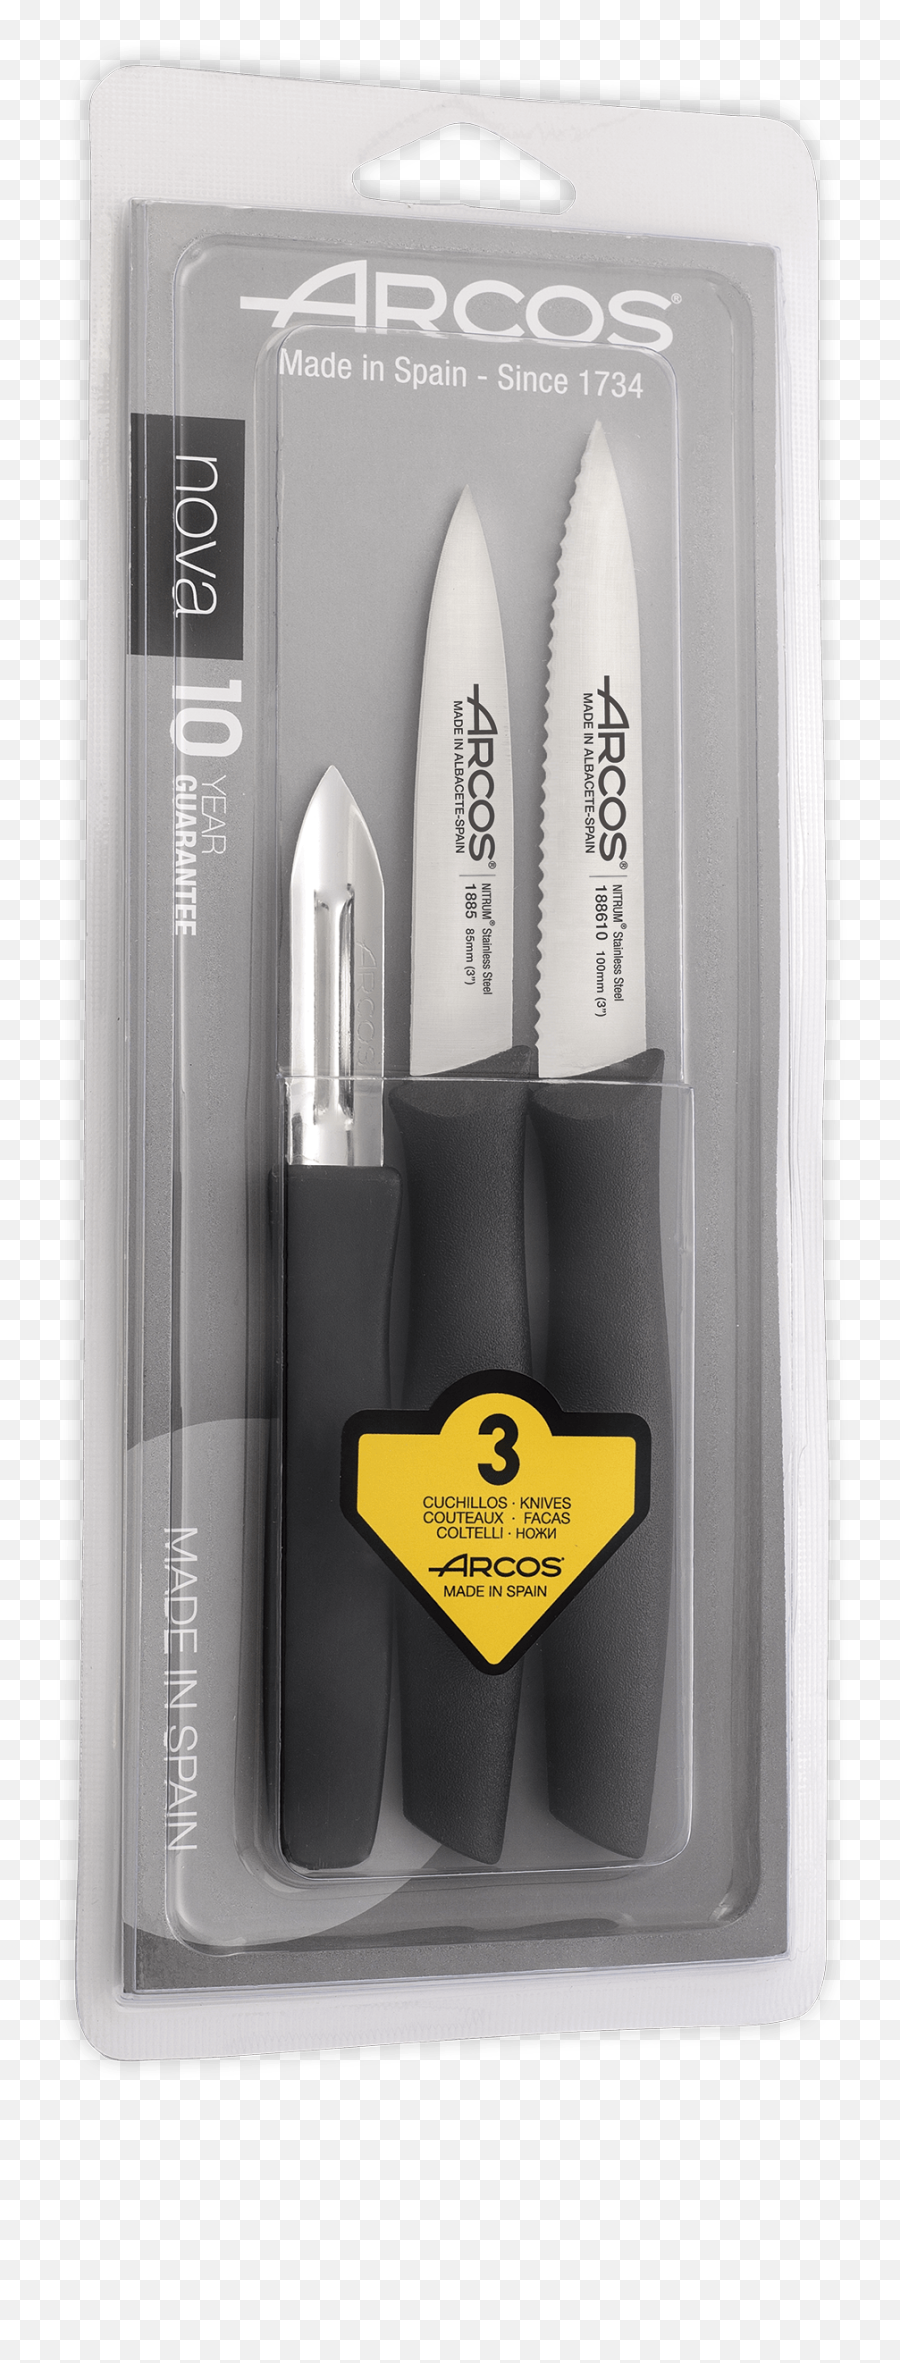 Arcos Usa Inc Knife Sets Knife Block Sets And Kitchen Emoji,Knife Hand Sign Emoji